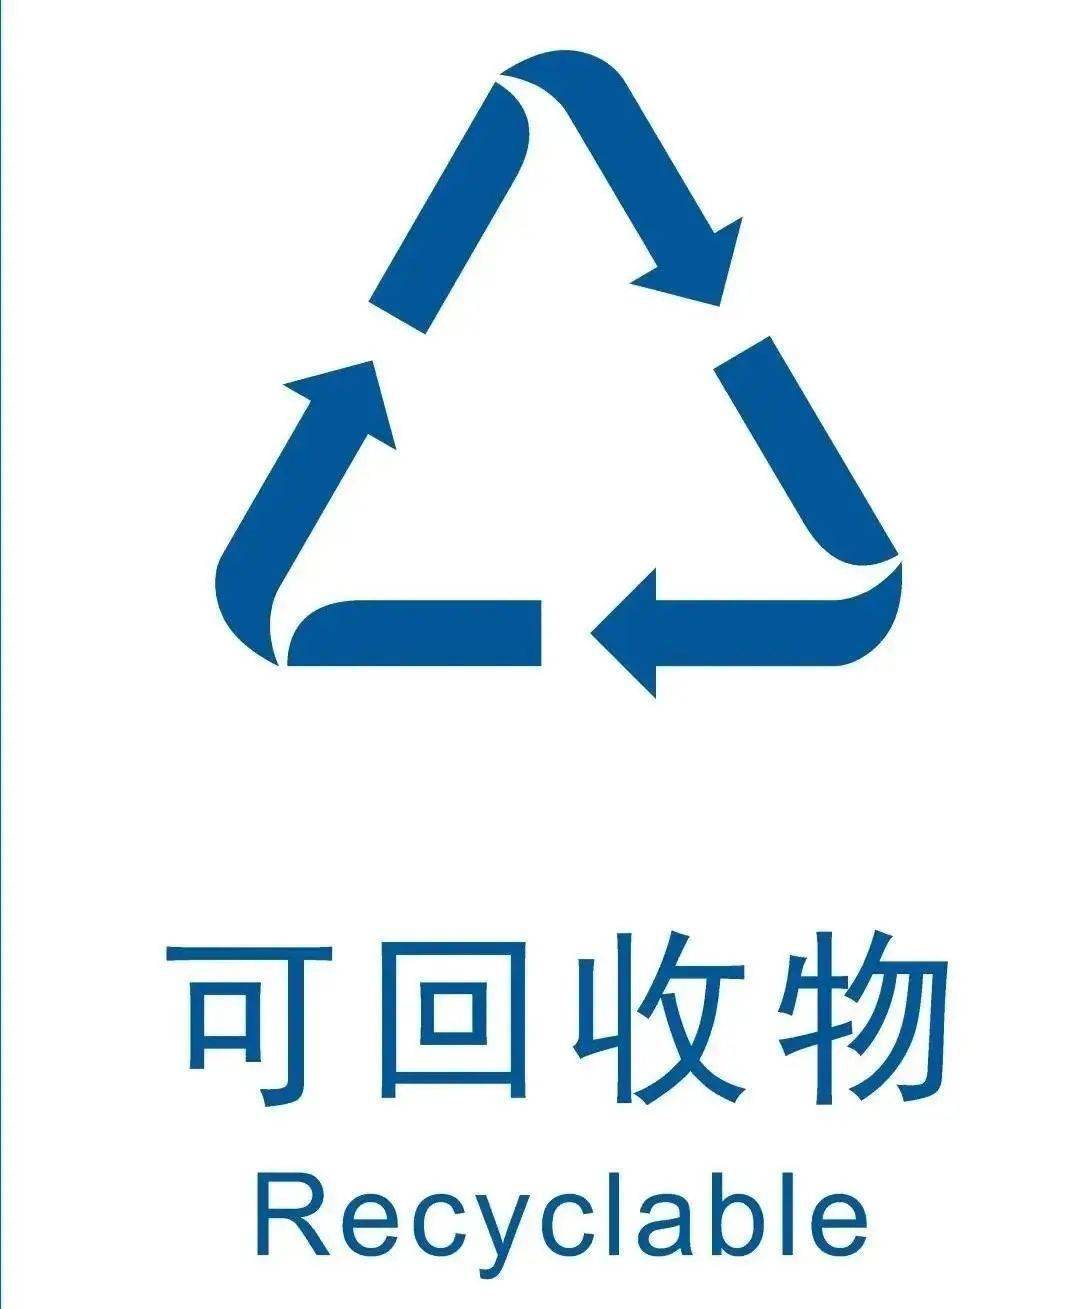 可回收垃圾 可回收垃圾是指适宜回收和资源利用的物品.